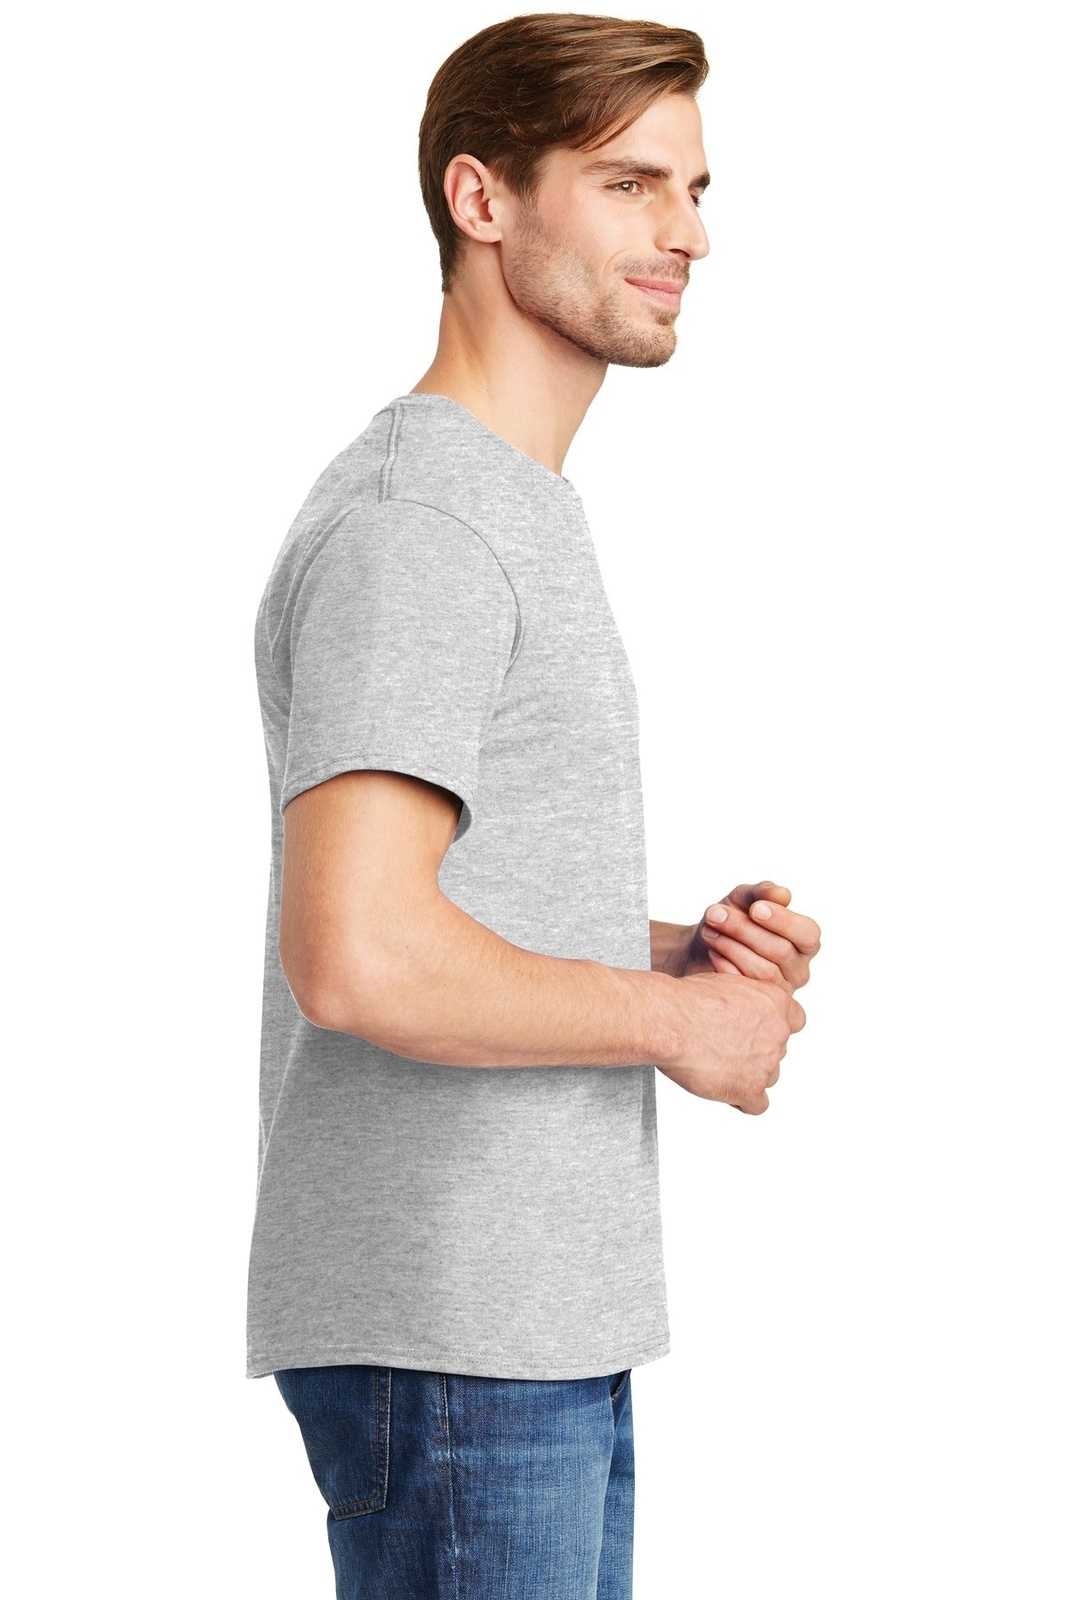 Hanes 5280 Comfortsoft 100% Cotton T-Shirt - Ash - HIT a Double